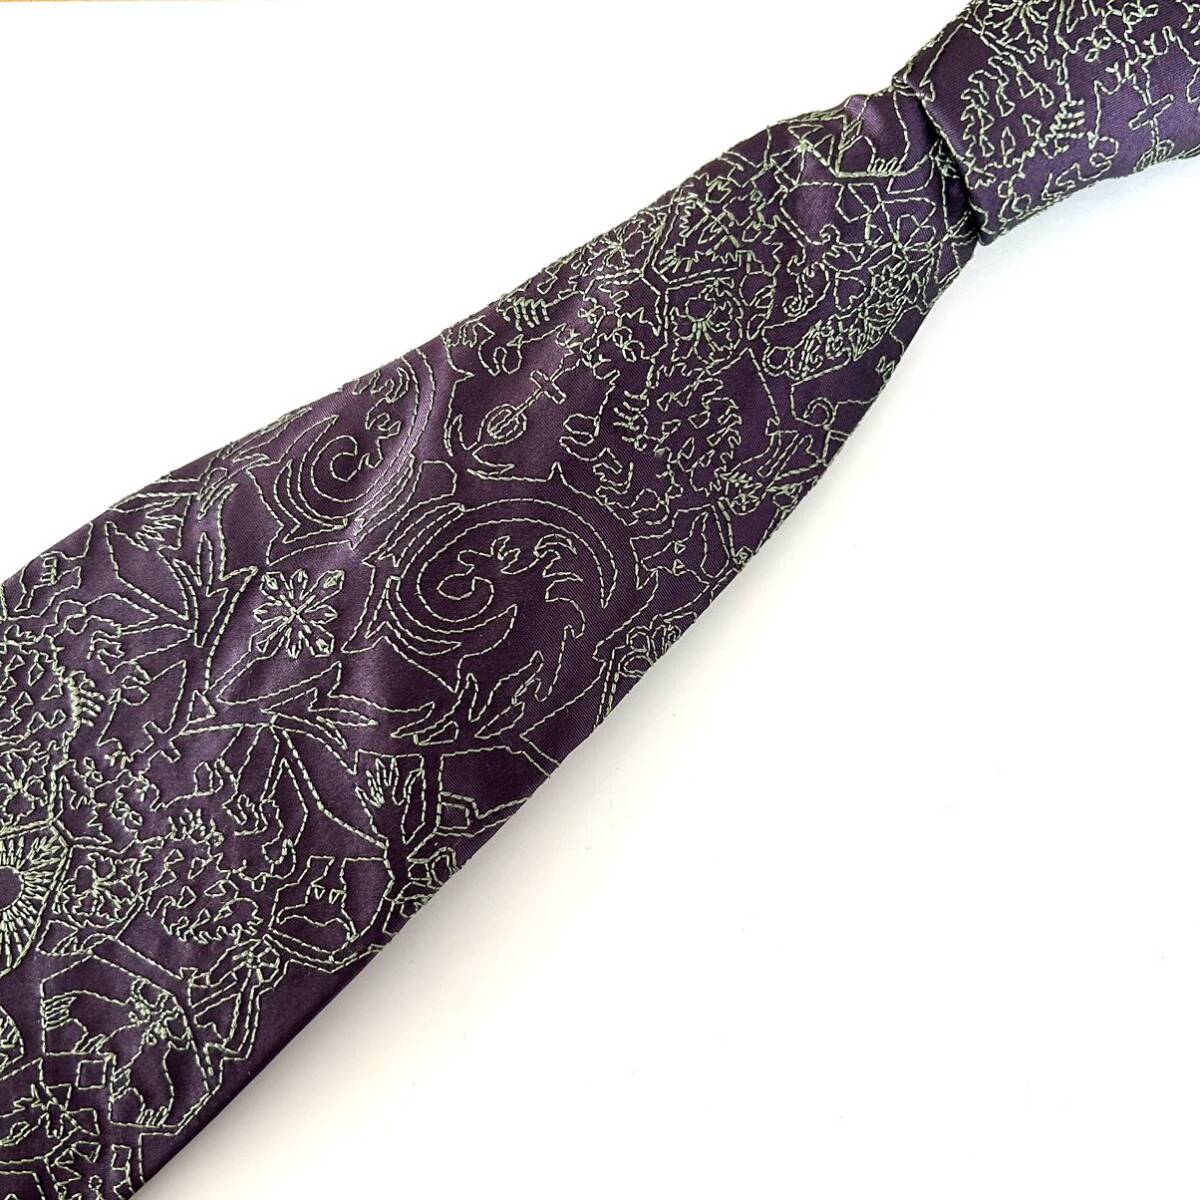 クリスチャンラクロワ 総刺繍 ネクタイ イタリア製 シルク